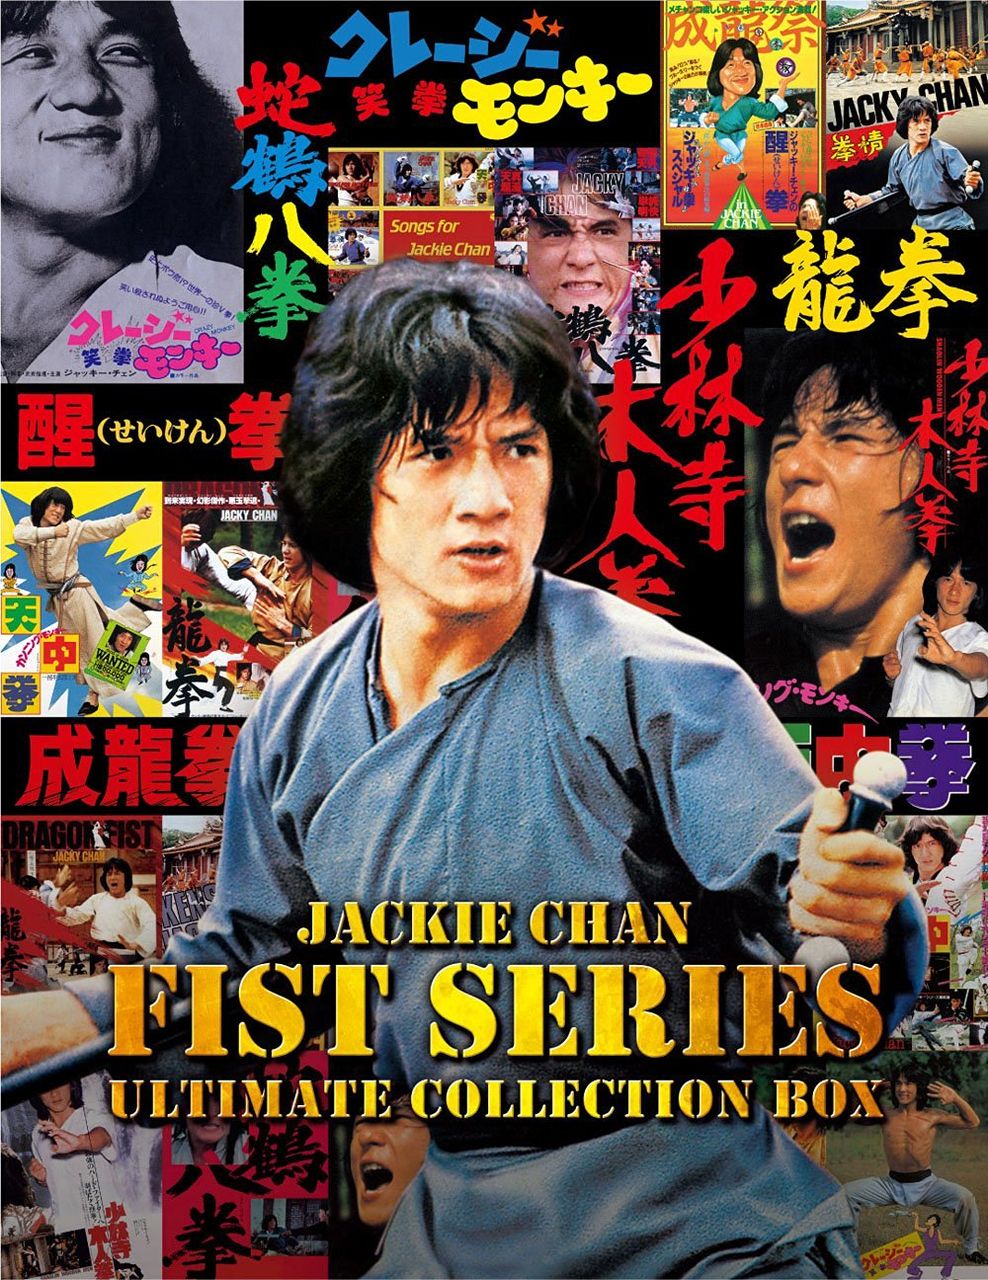 何度目だ ジャッキー チェン 拳 シリーズ アルティメット ブルーレイ コレクションbox発売決定 ひたすら映画を観まくる日記アルティメット エディション